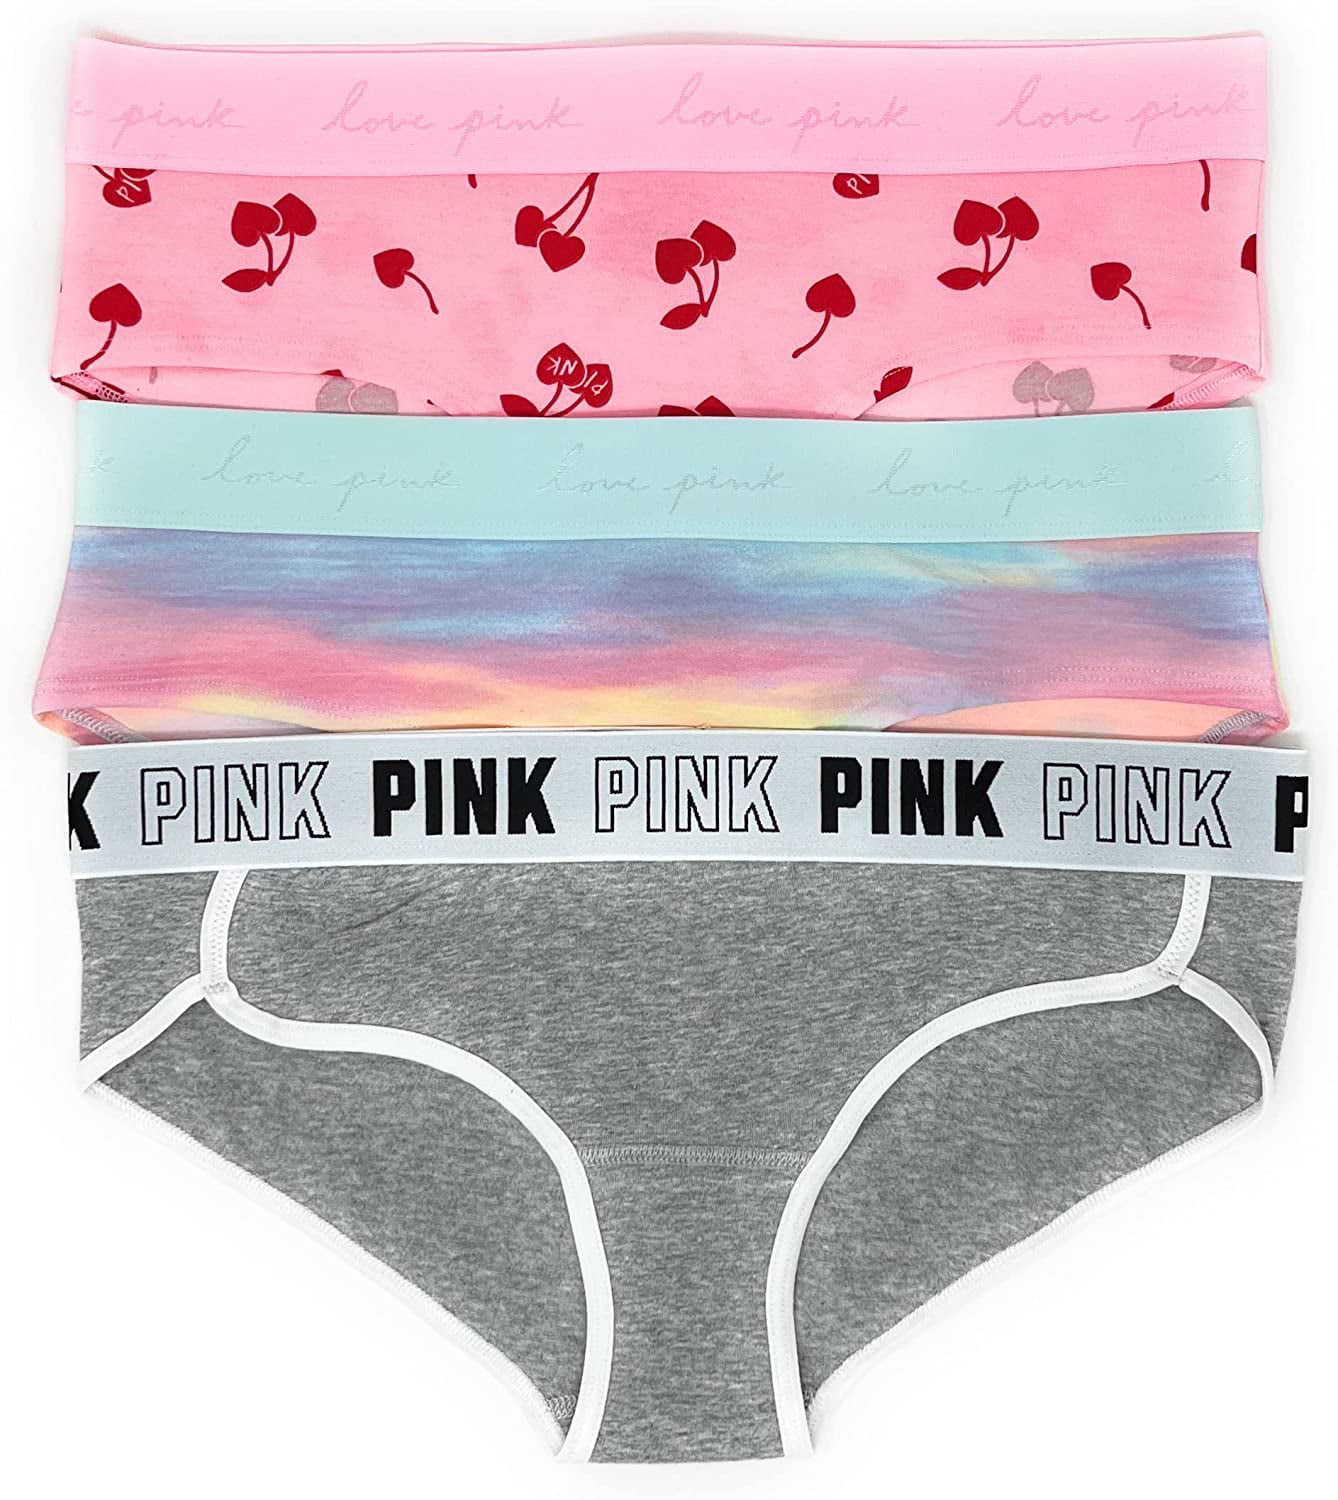 Victoria secret & pink underwear for Sale in Fresno, CA - OfferUp